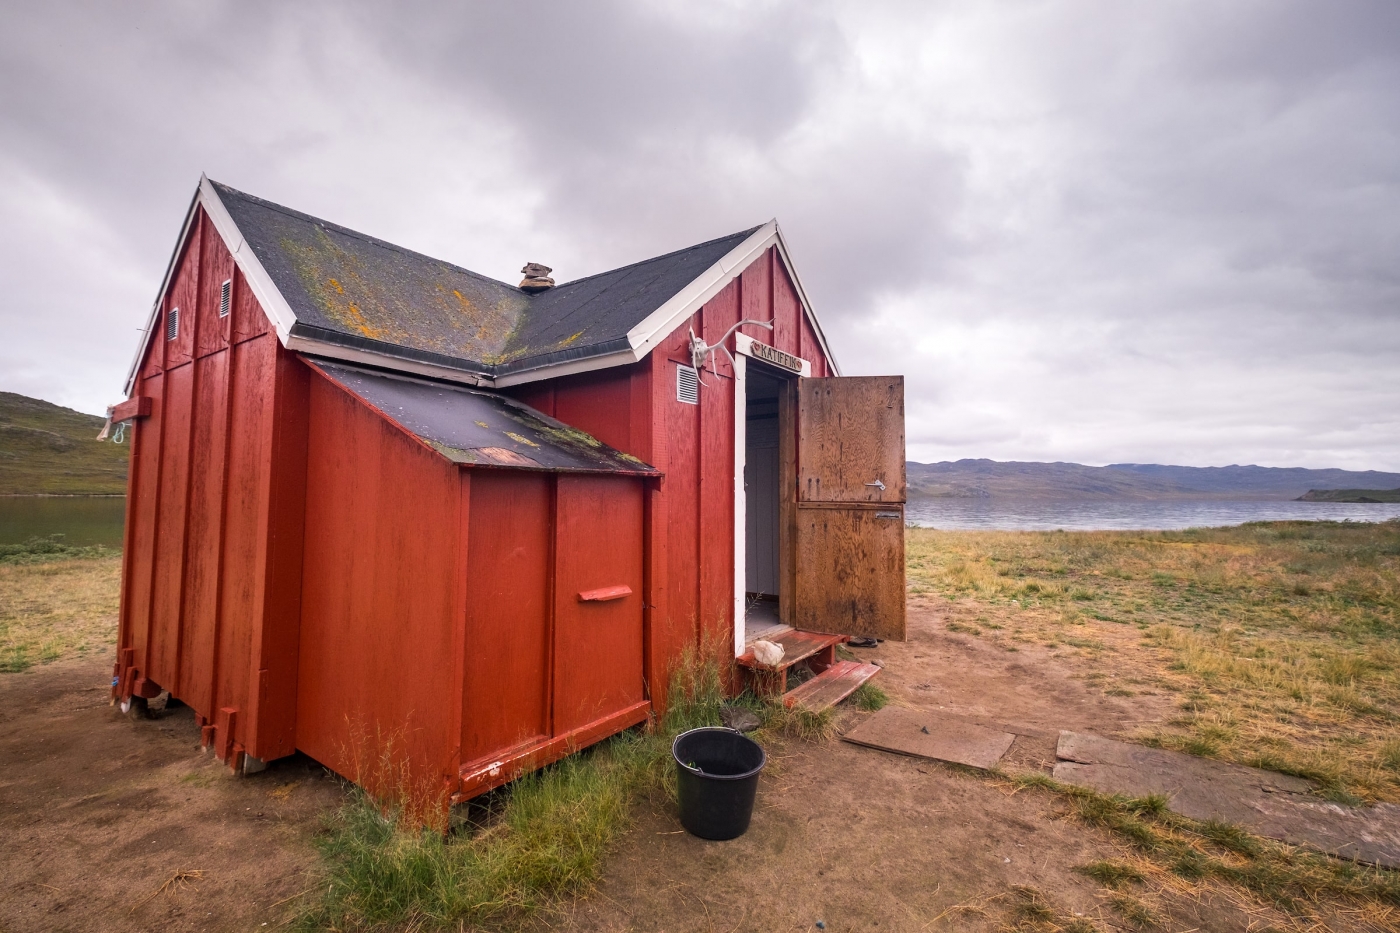 Katiffik Hut exterior - Day 1 of Arctic Circle Trail. Photo by Lisa Germany - Visit Greenland